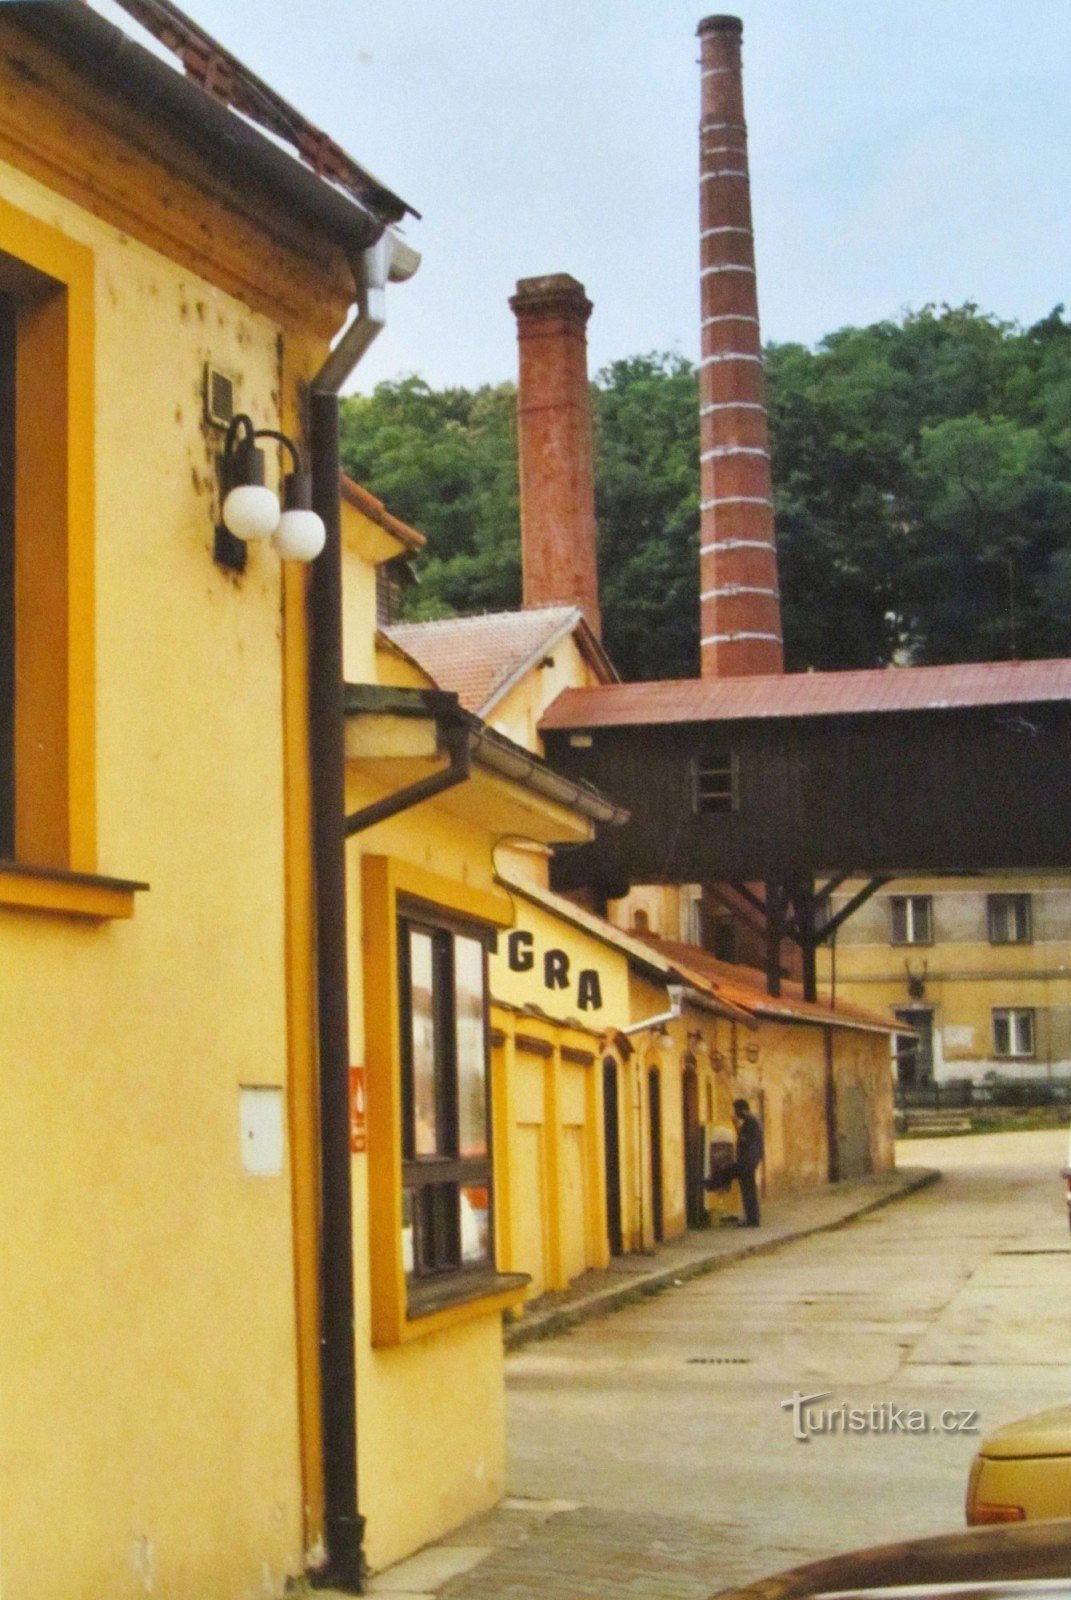 チェルナー ホラ - 醸造所